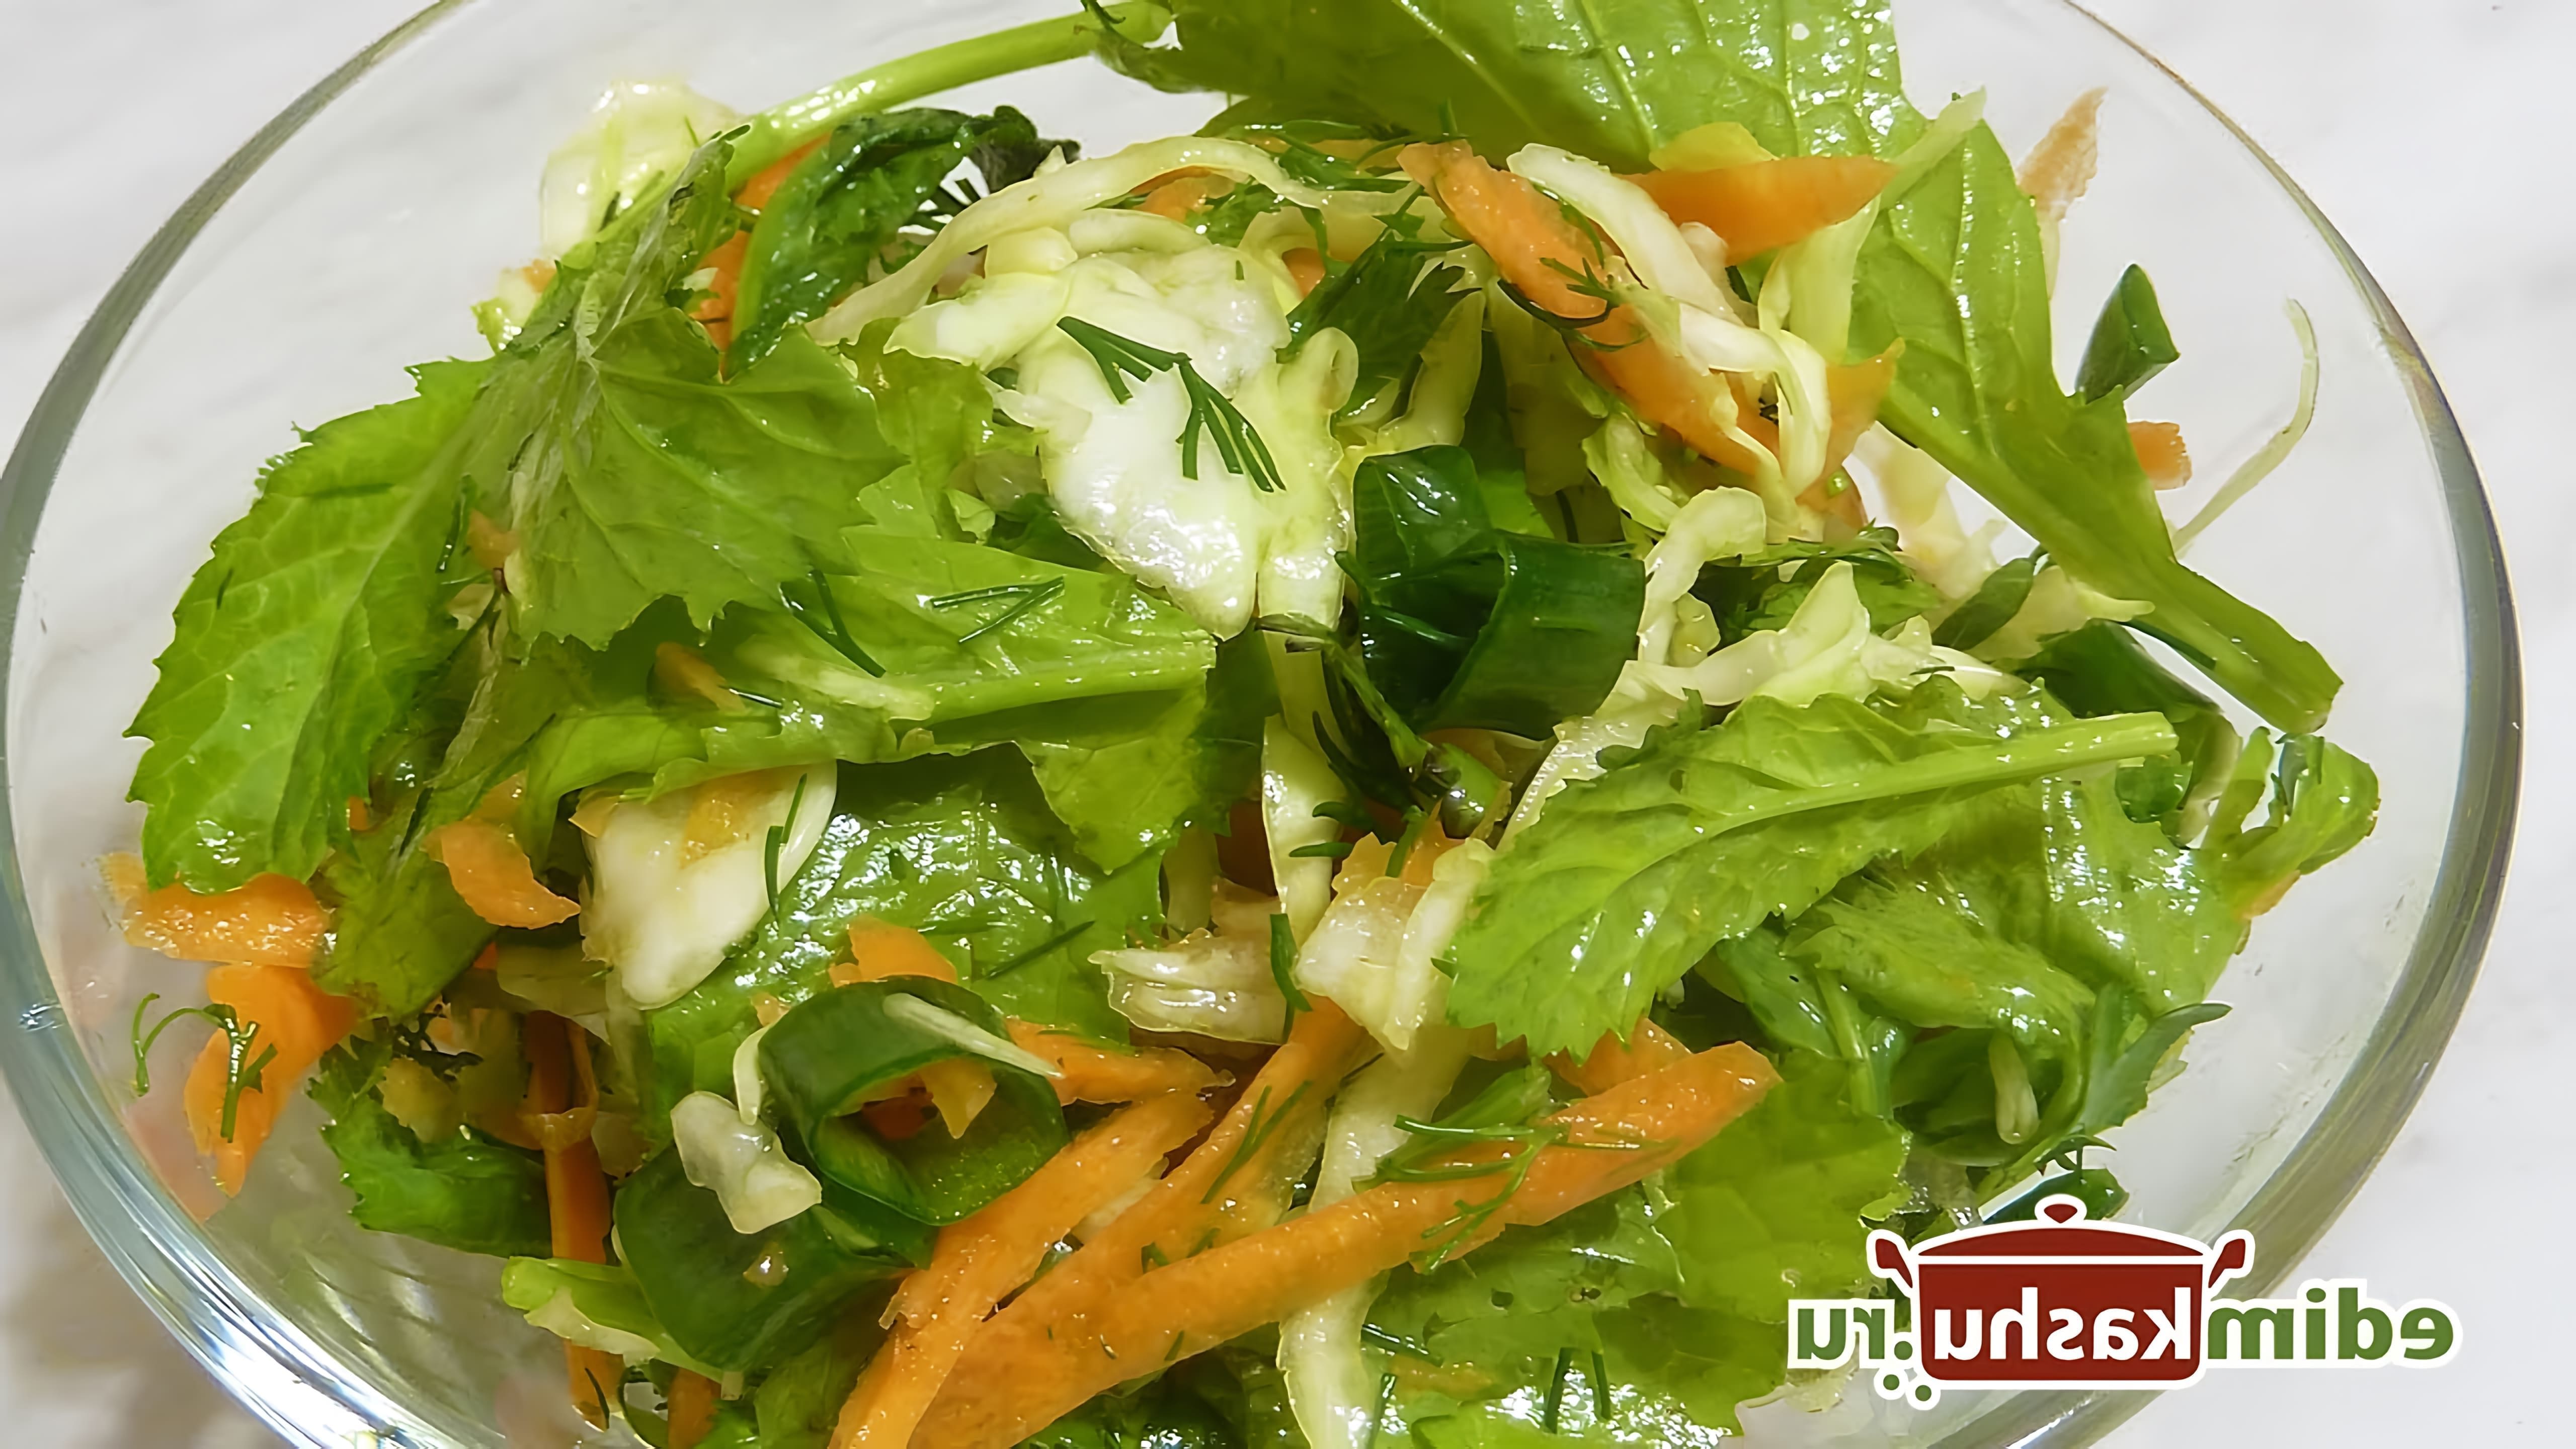 В этом видео Наталья Горбачева рассказывает о трех простых рецептах салатов с листовой горчицей